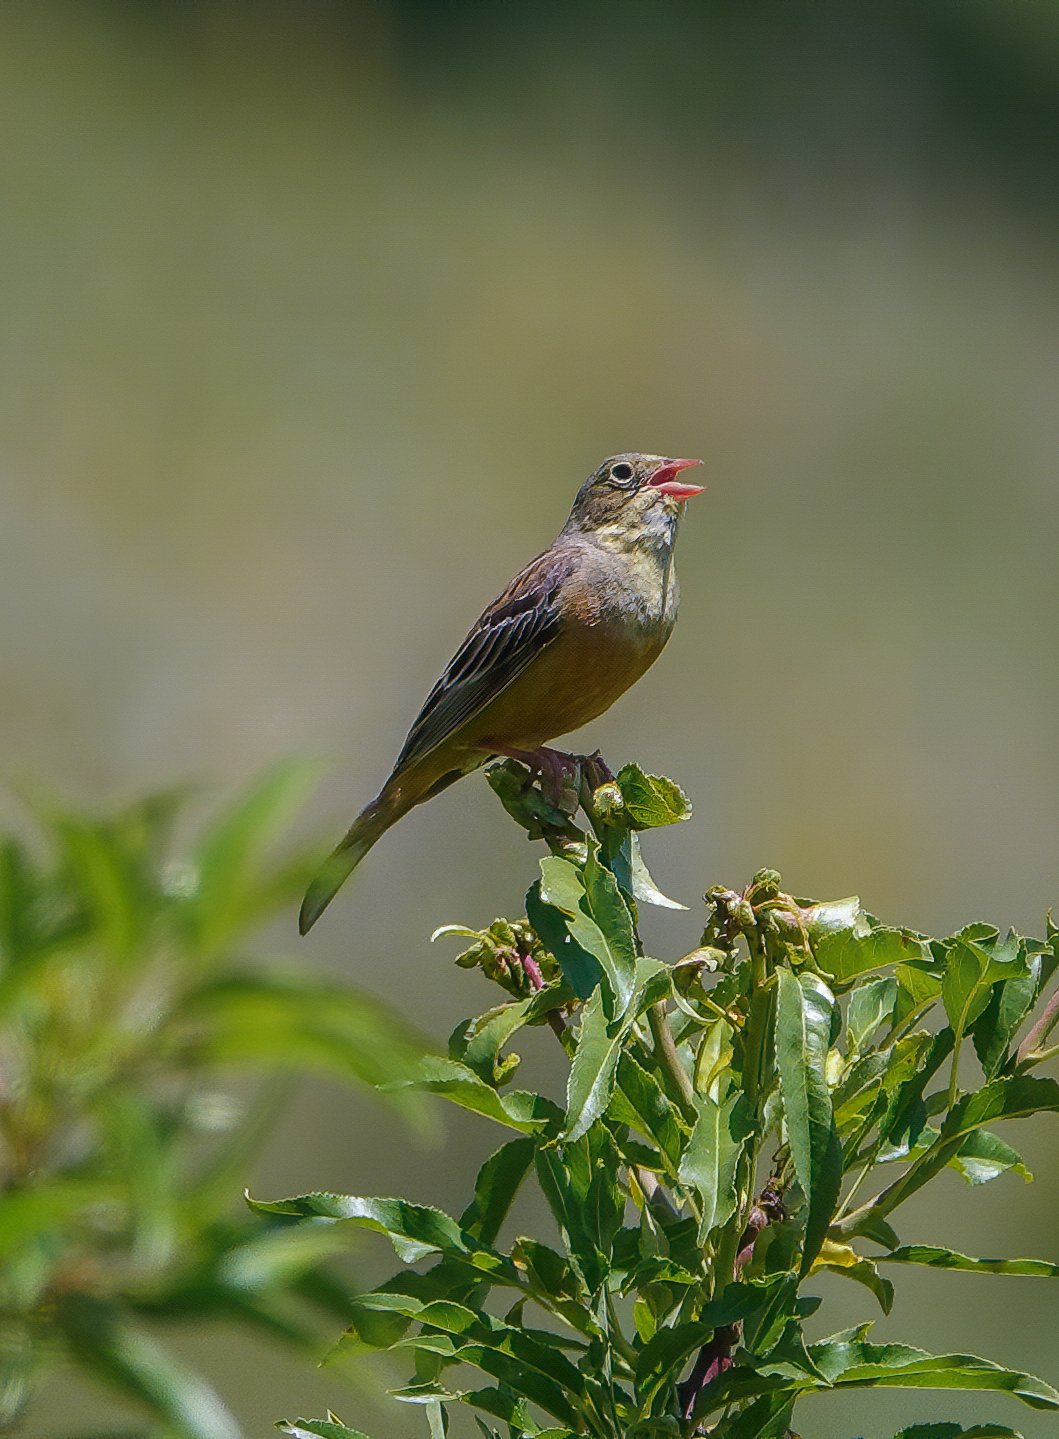 Uccelli migratori fanno tappa in Abruzzo: gli avvistamenti FOTO VIDEO